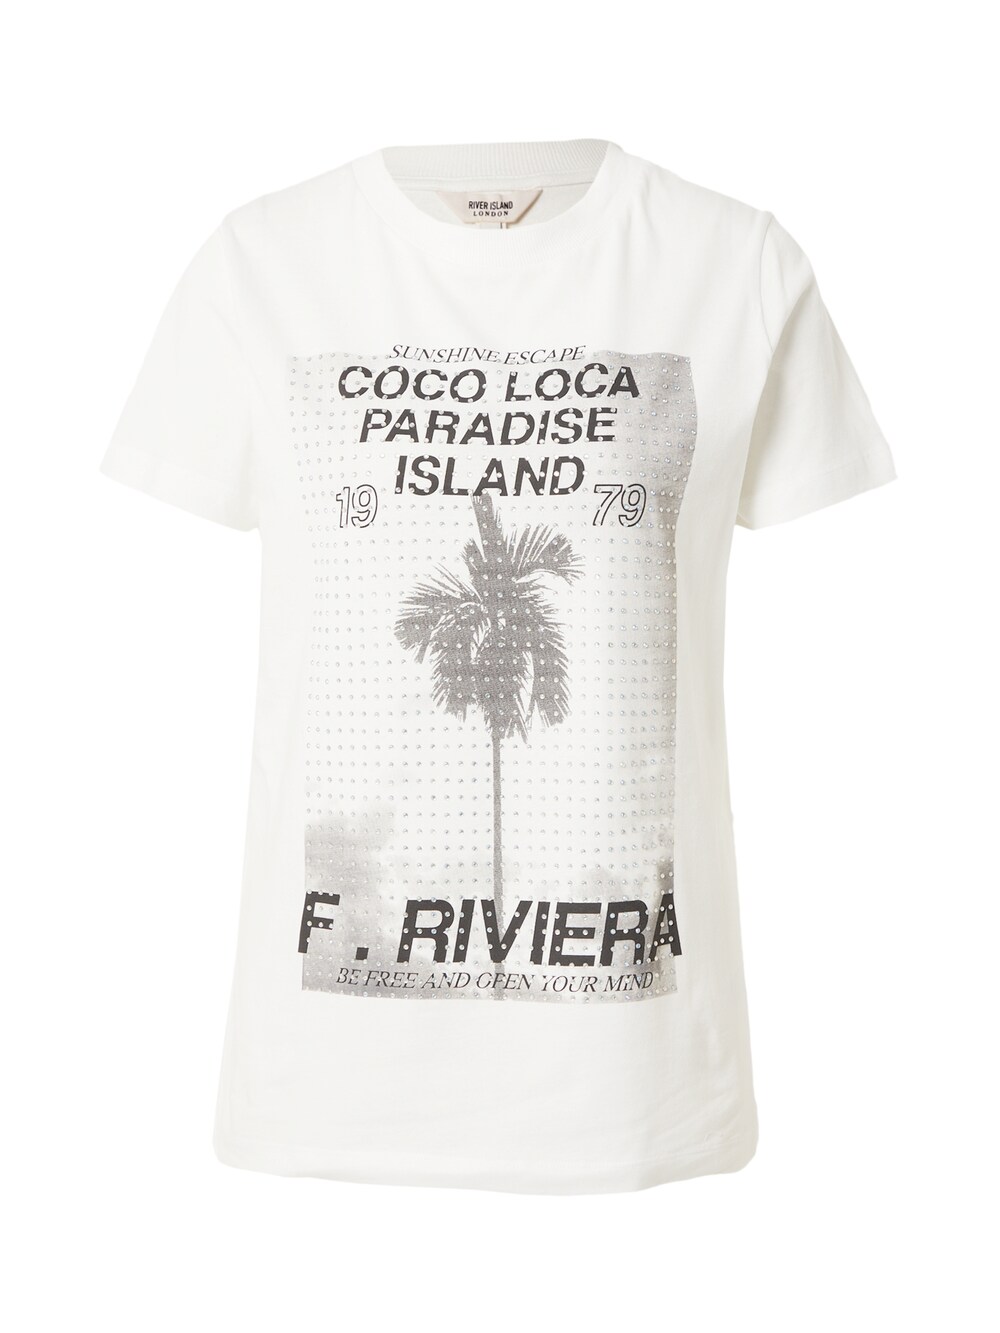 Рубашка River Island, белый